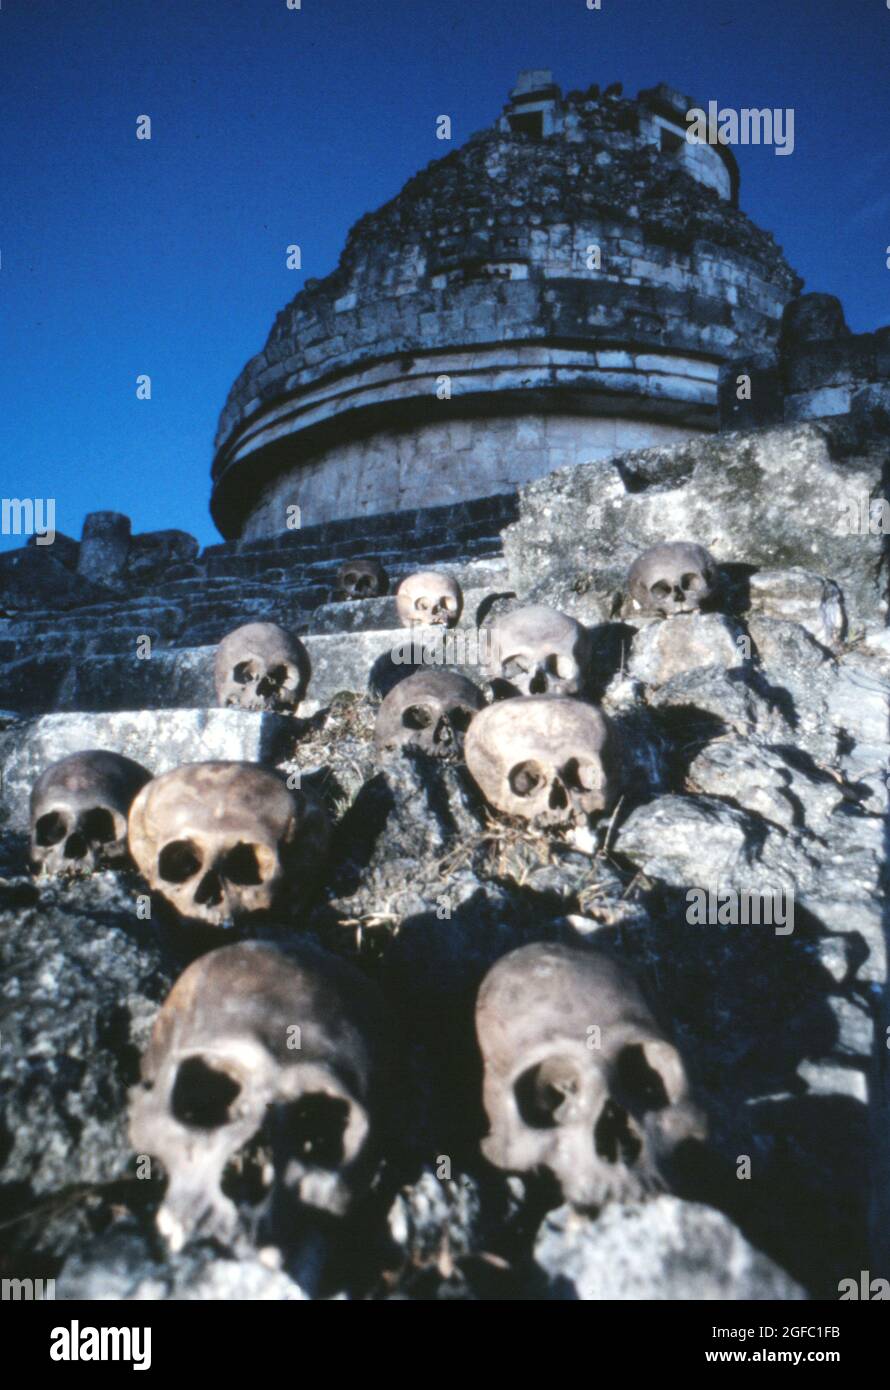 Des crânes de sacrifices humains dragué du cenote sacré à Chichen Itza par l'équipe archéologique de 1967 sous la direction de Román Piña Chán. Photo de Phillip Harrington Banque D'Images